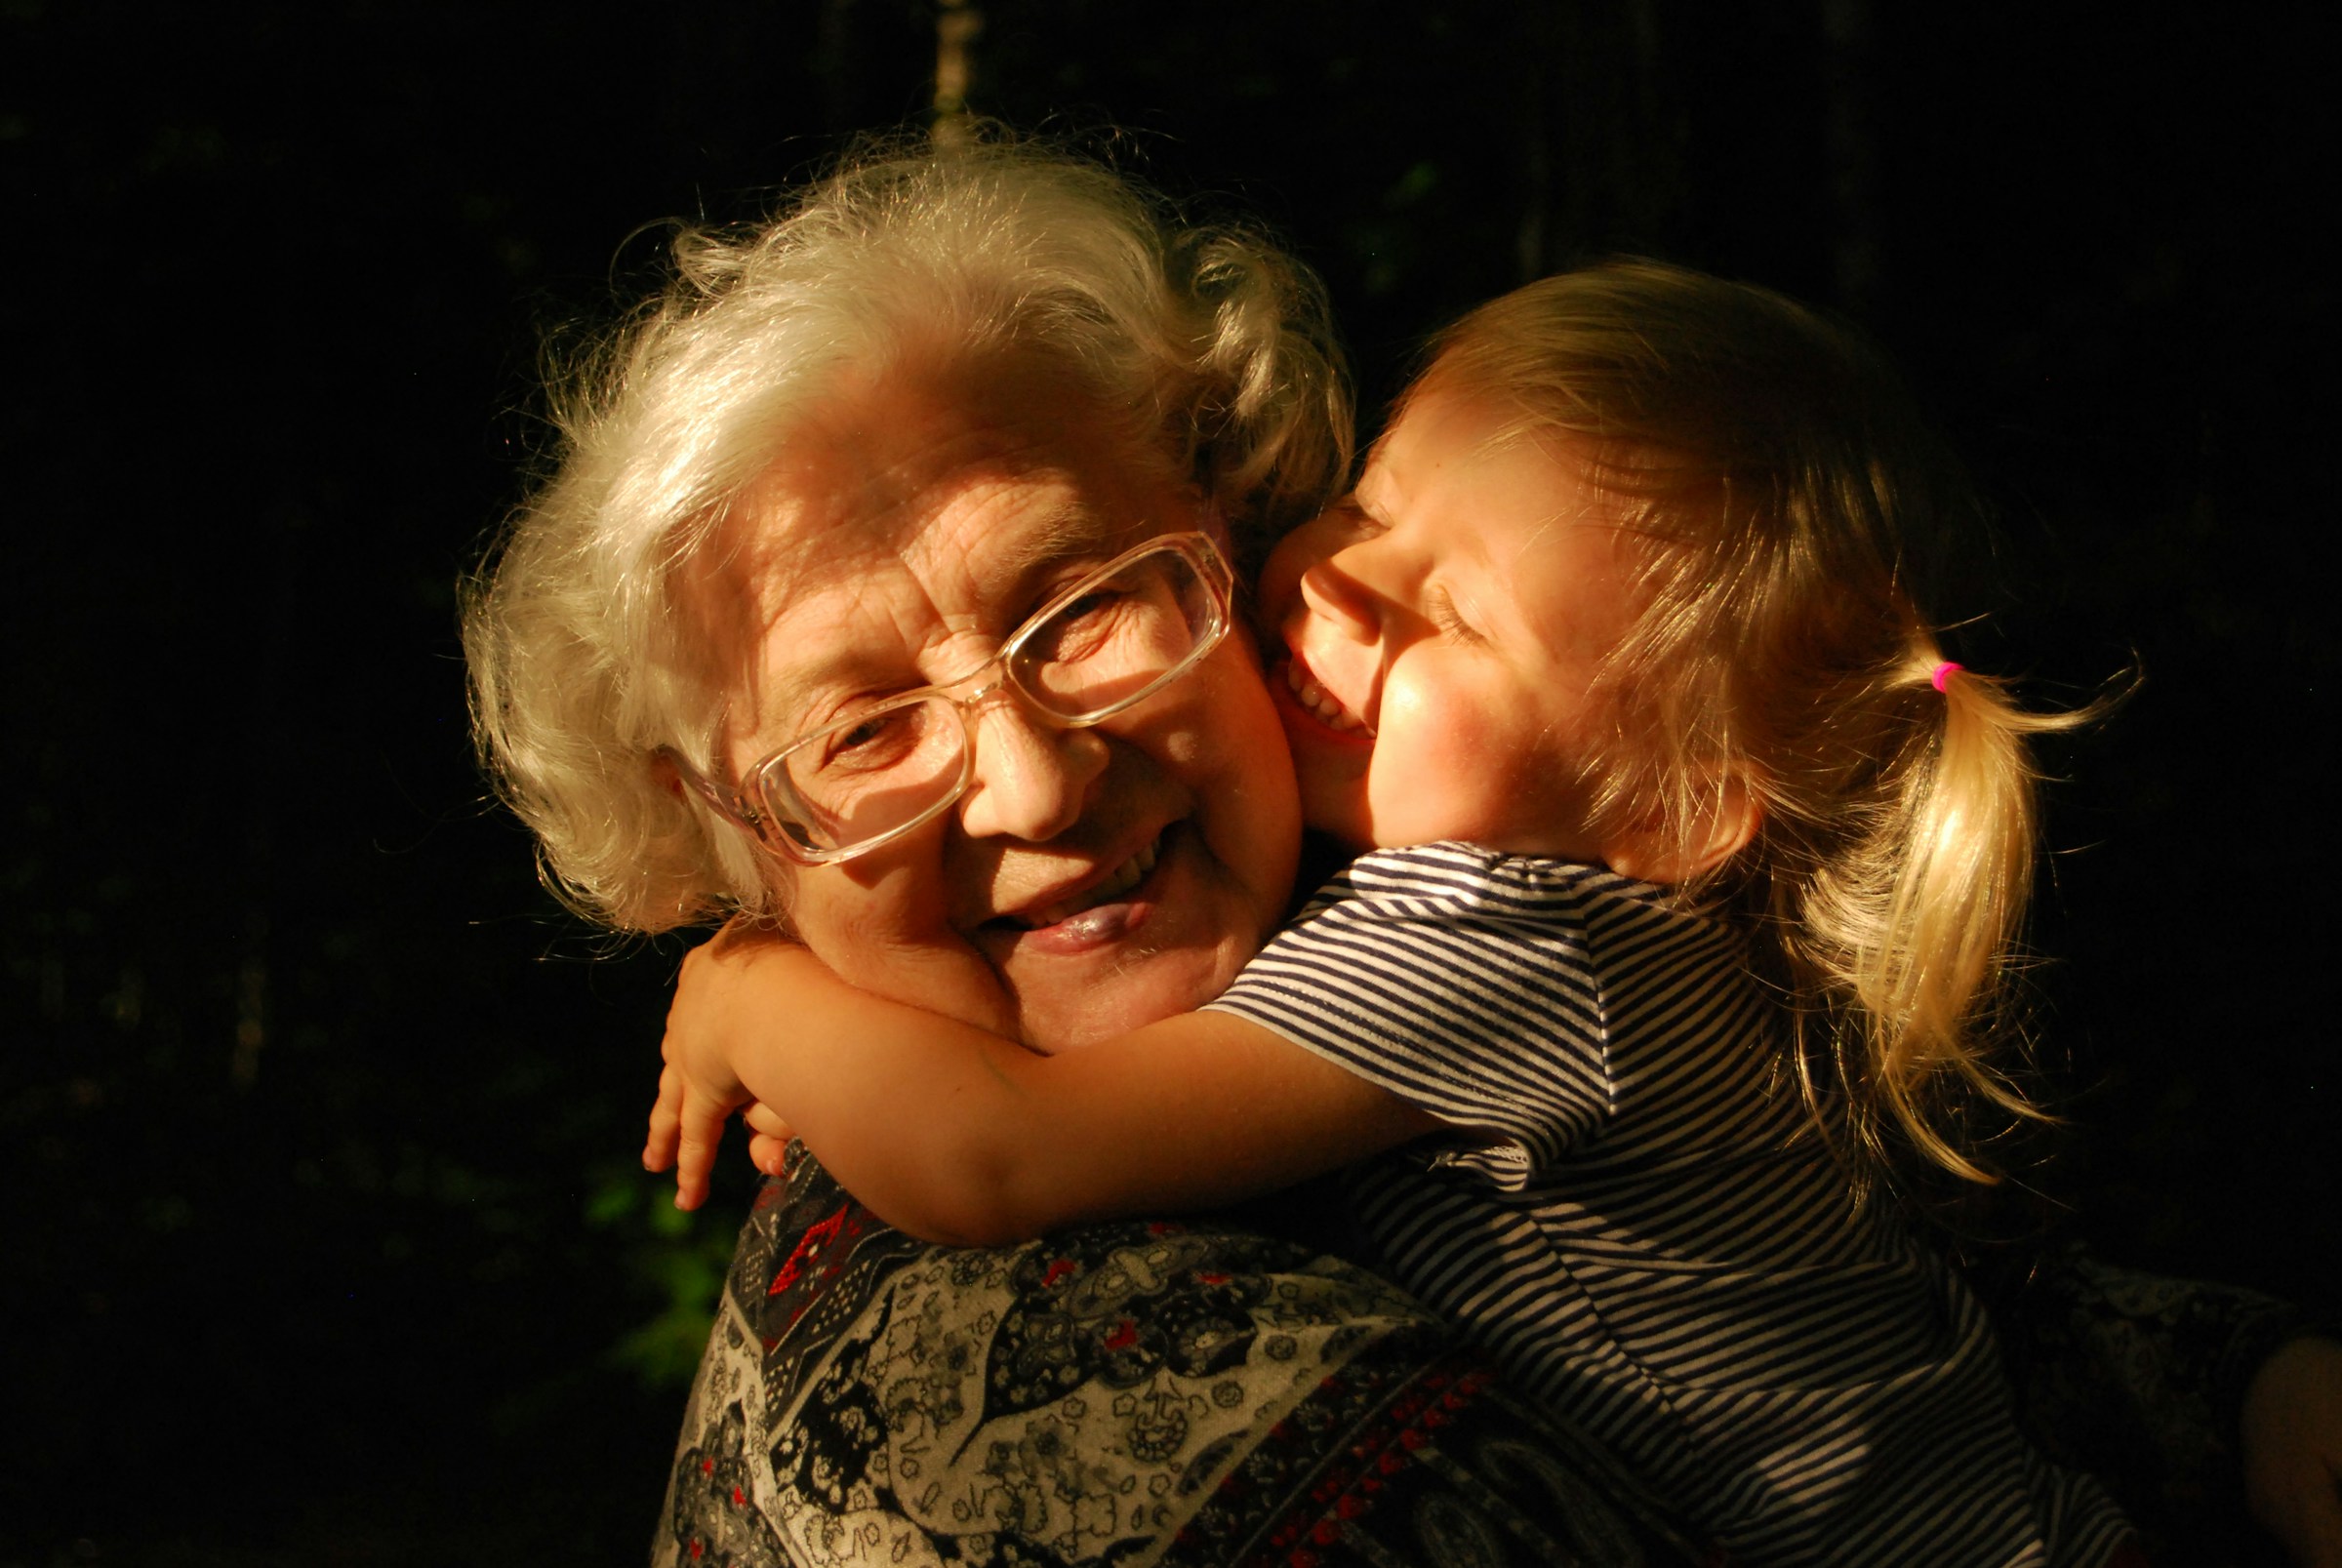 A grandmother hugging her granddaughter | Source: Unsplash